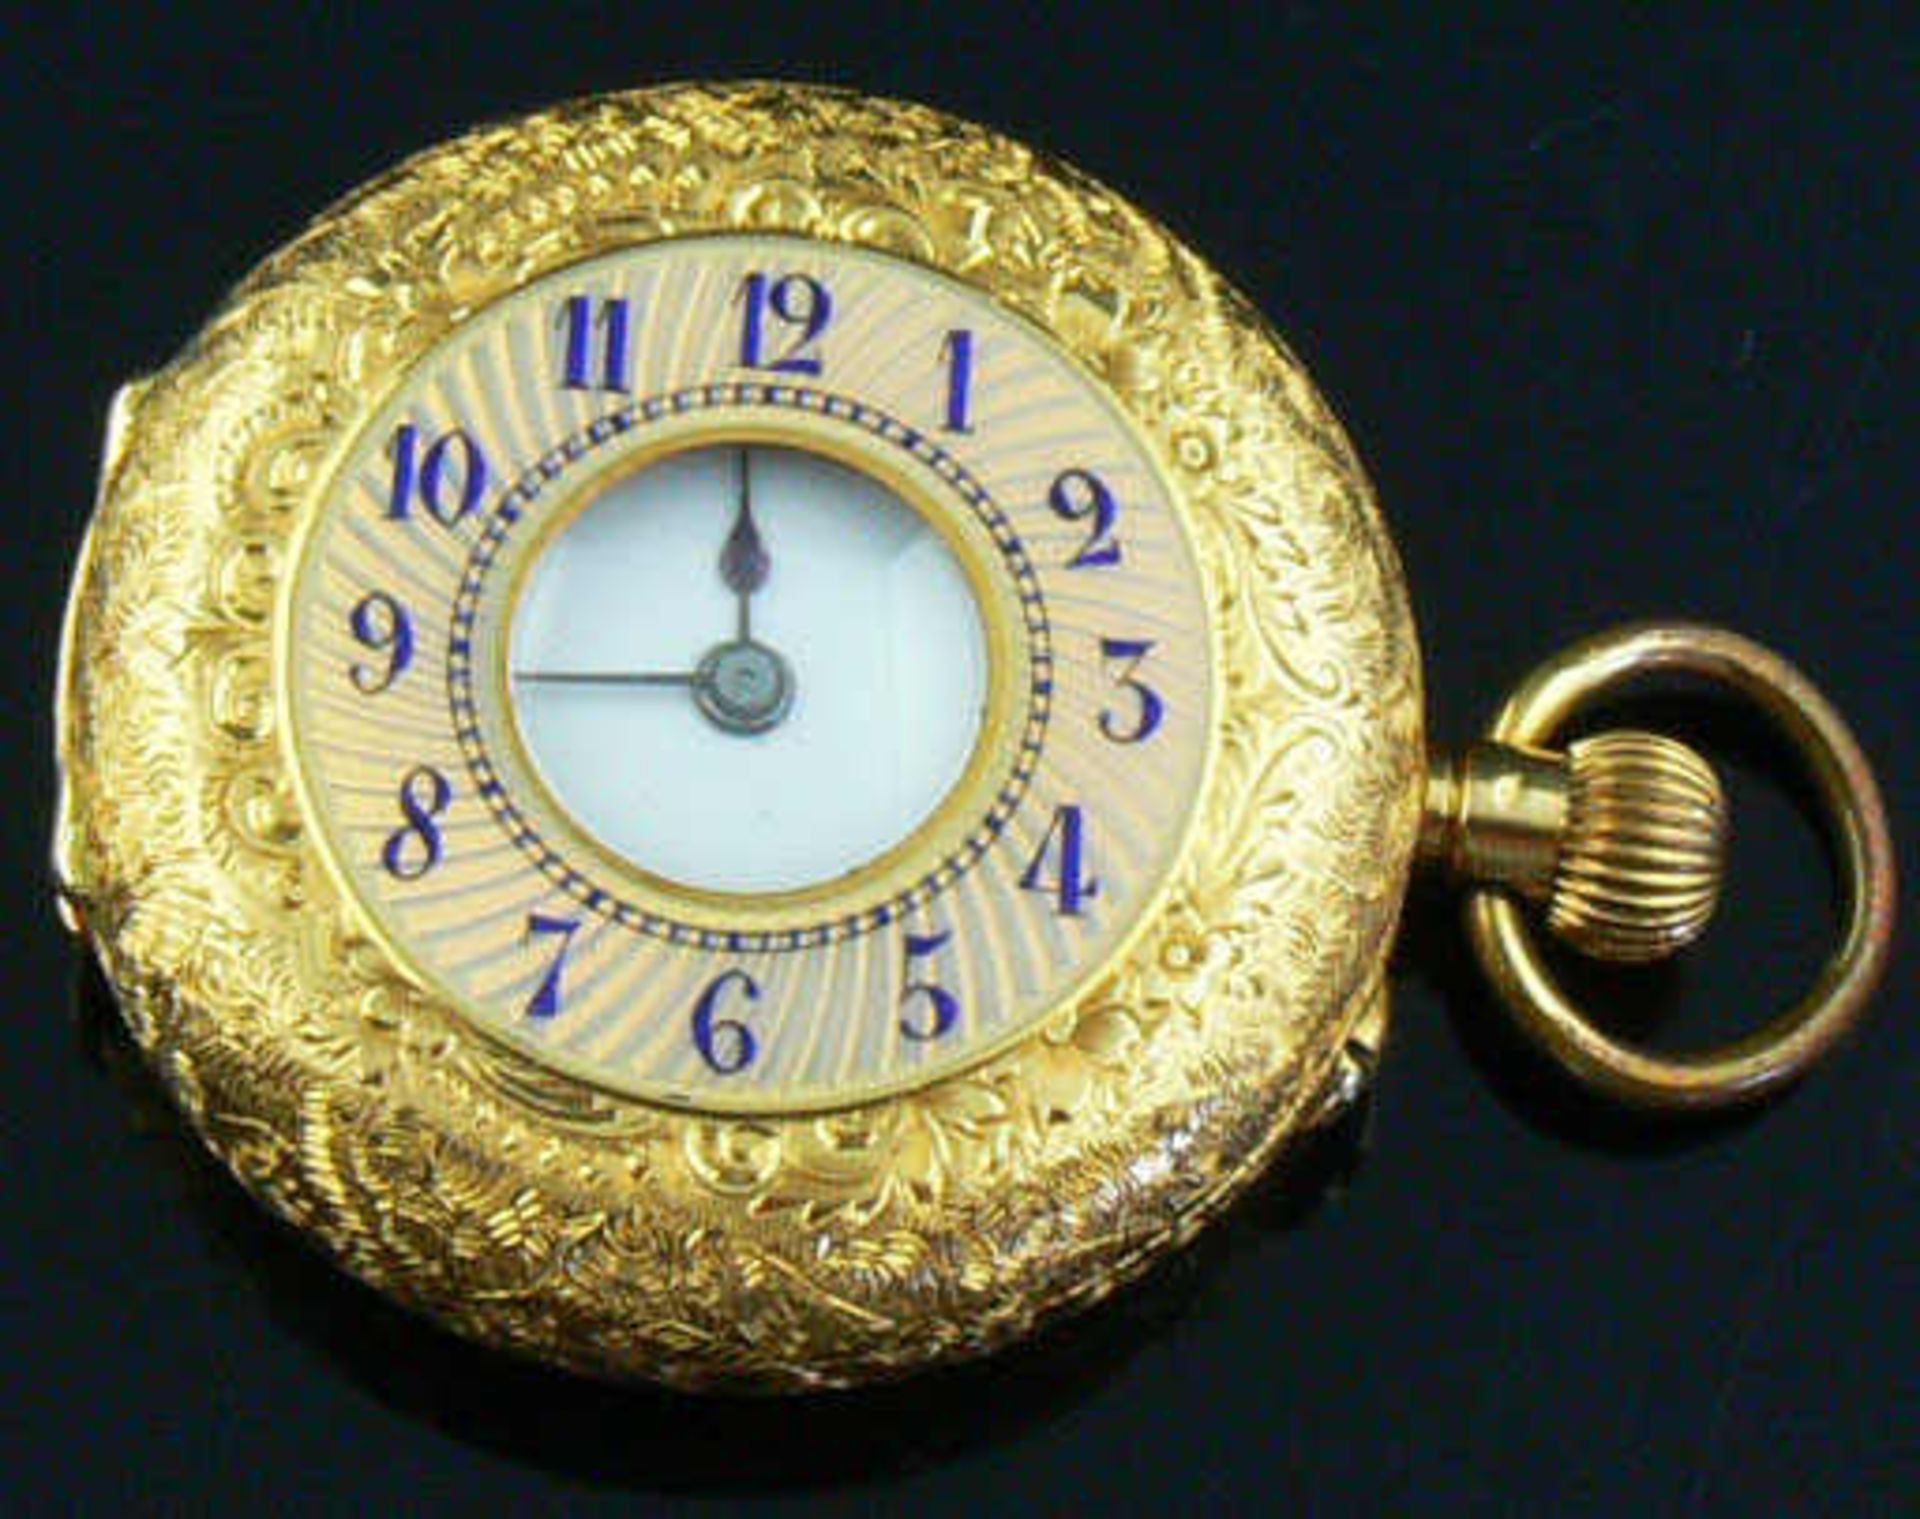 750er Gold Taschenuhr mit Emaille, ca 41,88 g. 750 gold pocket watch with enamel, about 41.88 g .